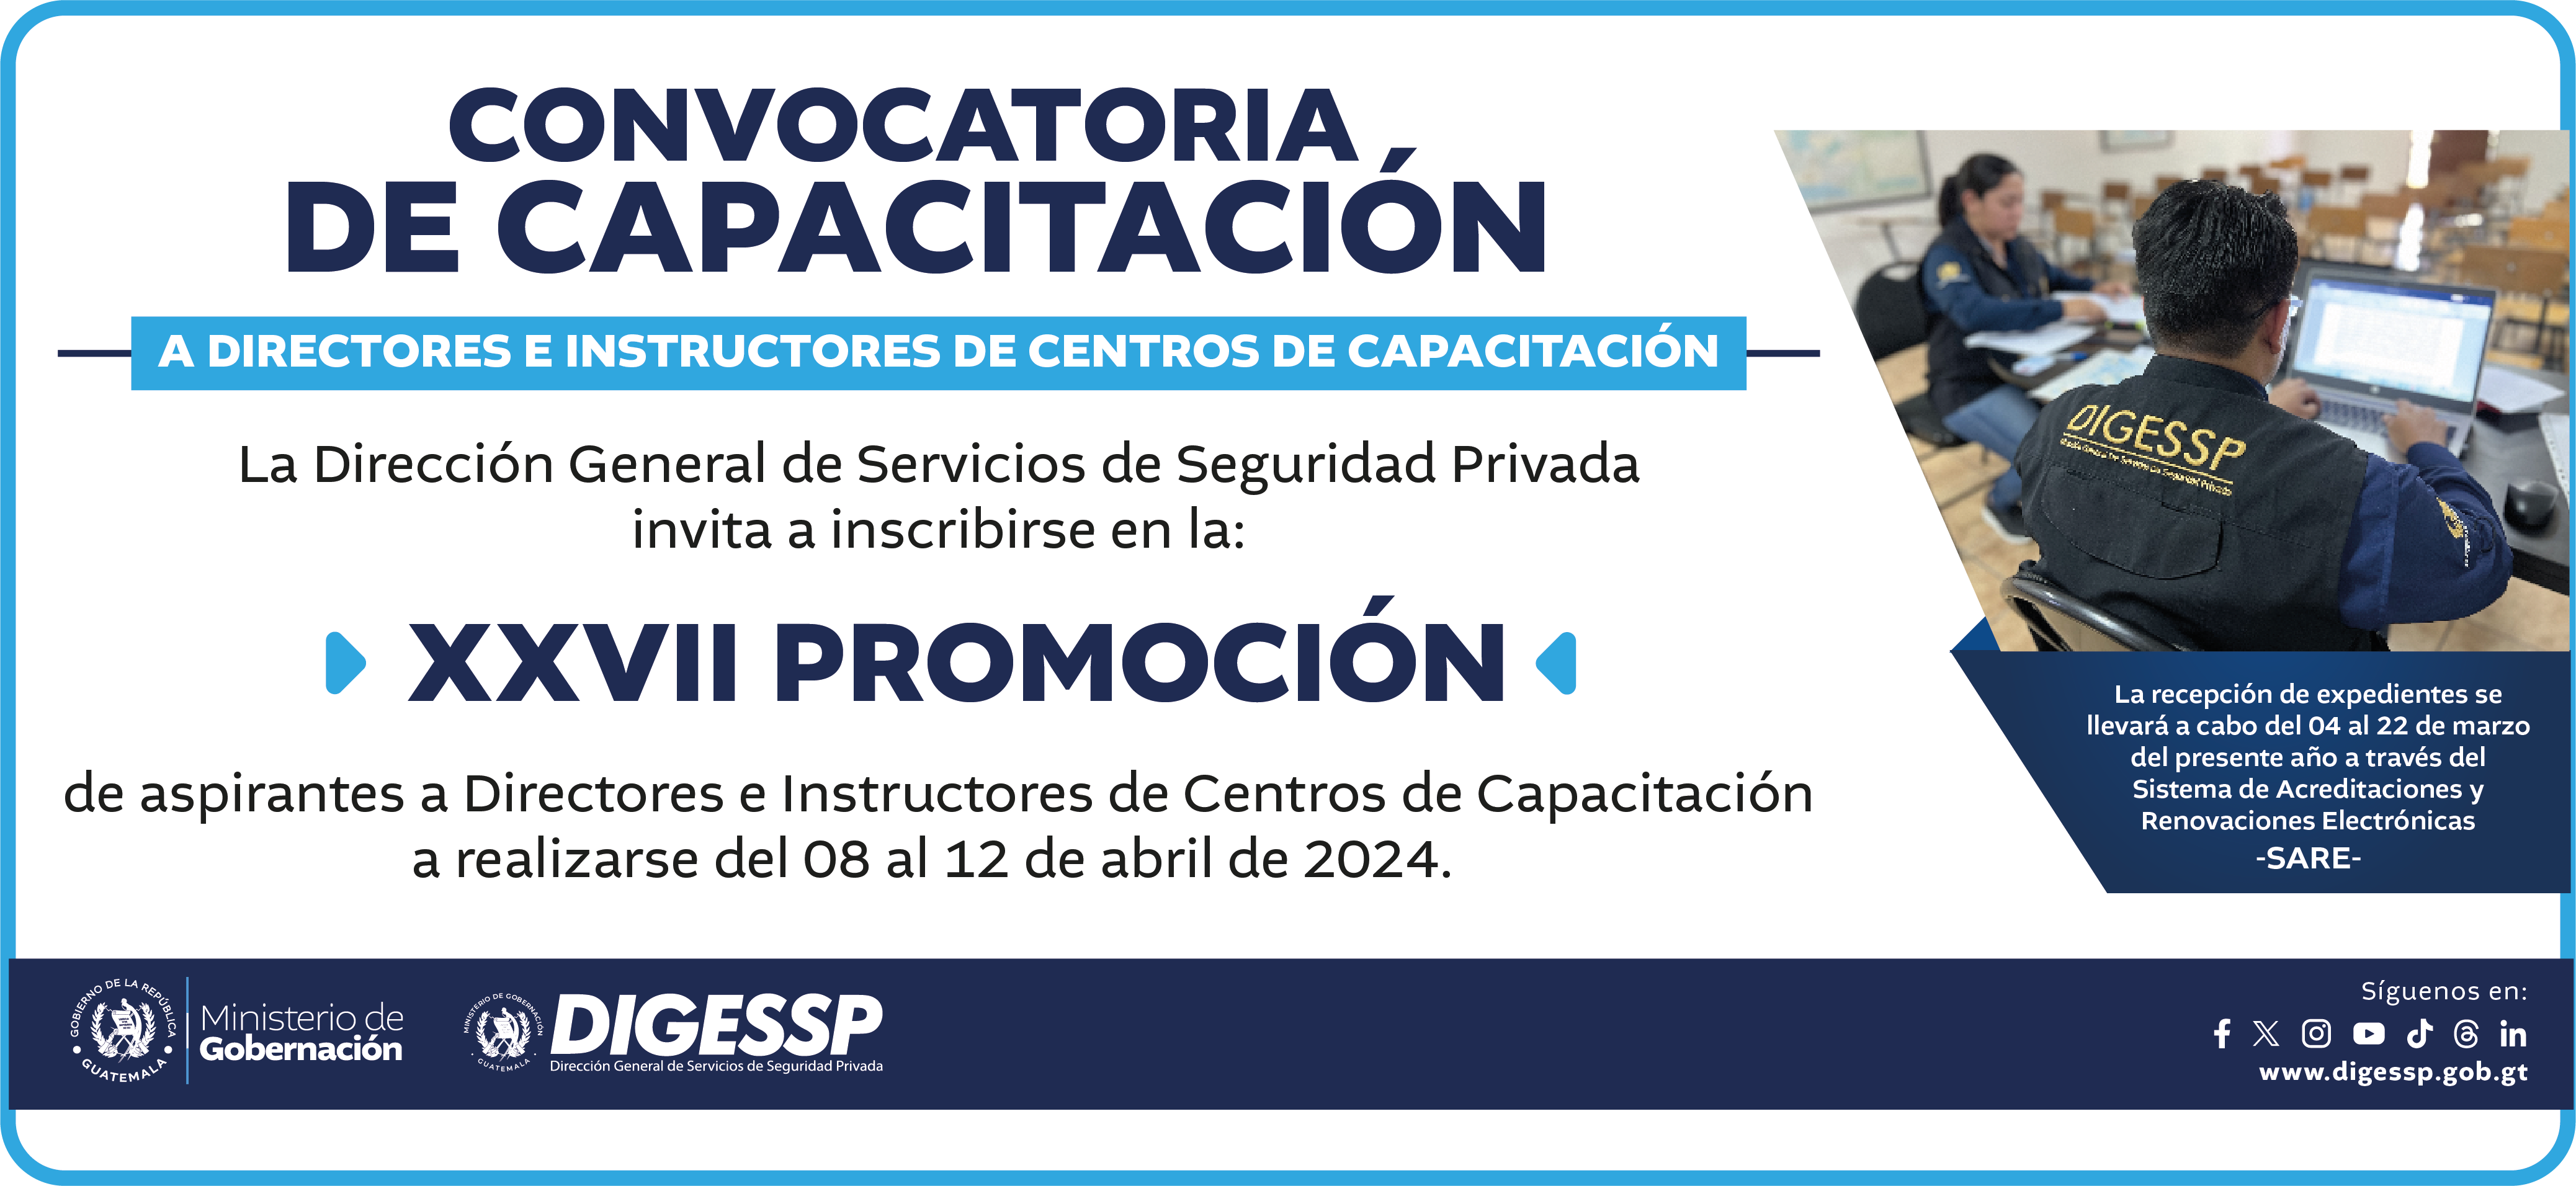 La DIGESSP invita a inscribirse en la XXVII PROMOCIÓN de aspirantes a Directores e Instructores de Centros de Capacitación a realizarse del 08 al 12 de abril de 2024